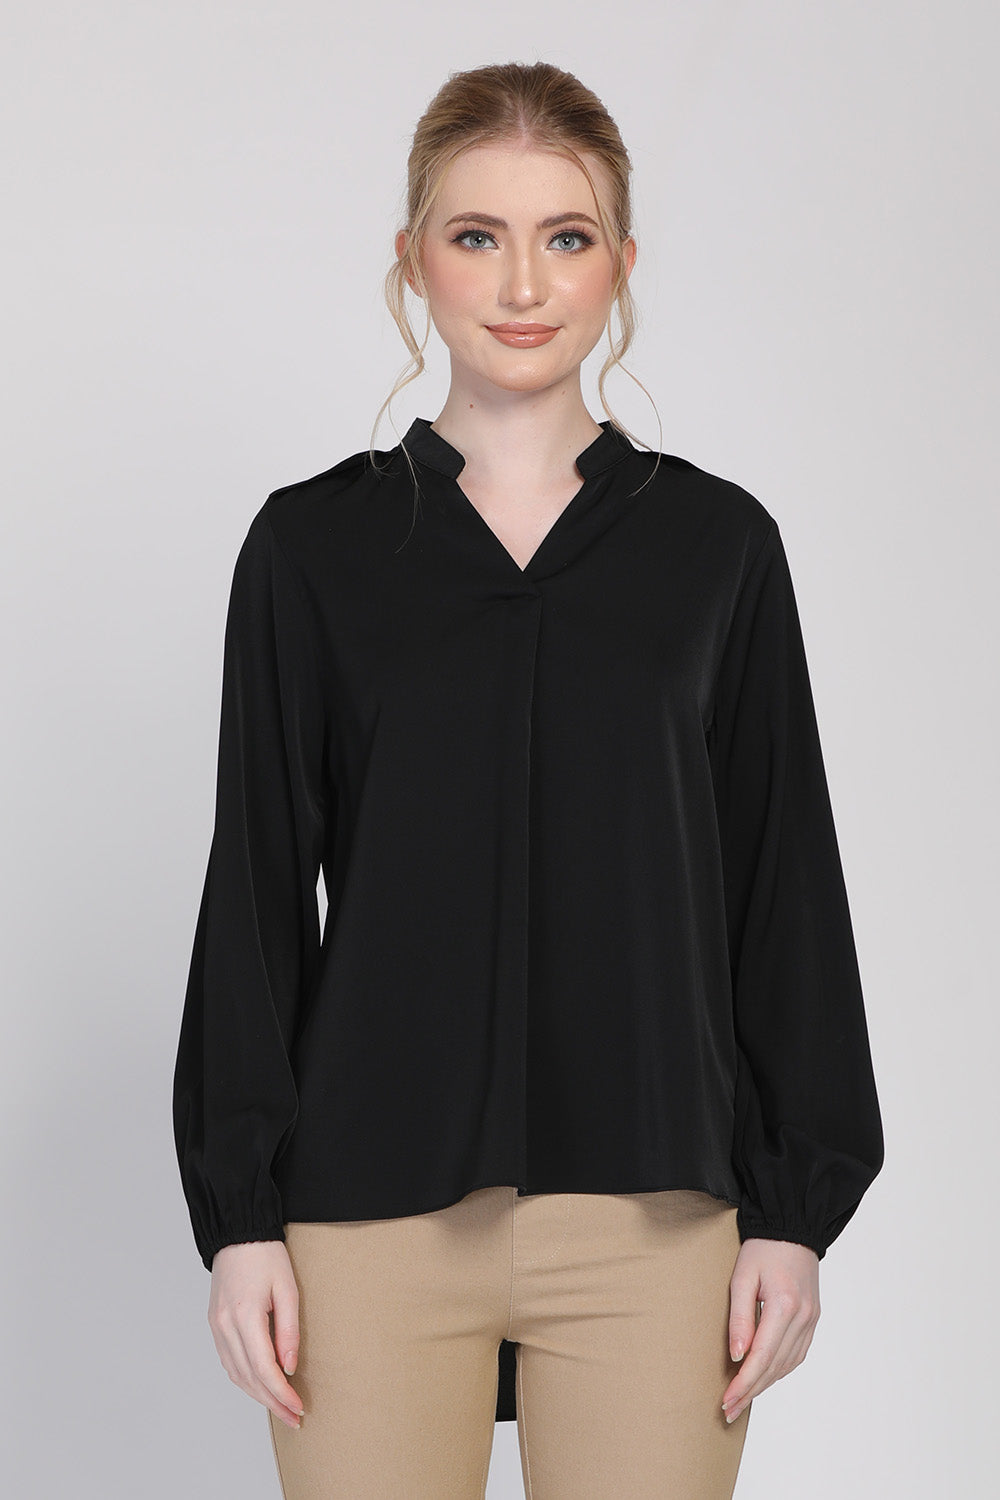 Keanna Long Sleeves Blouse in Black